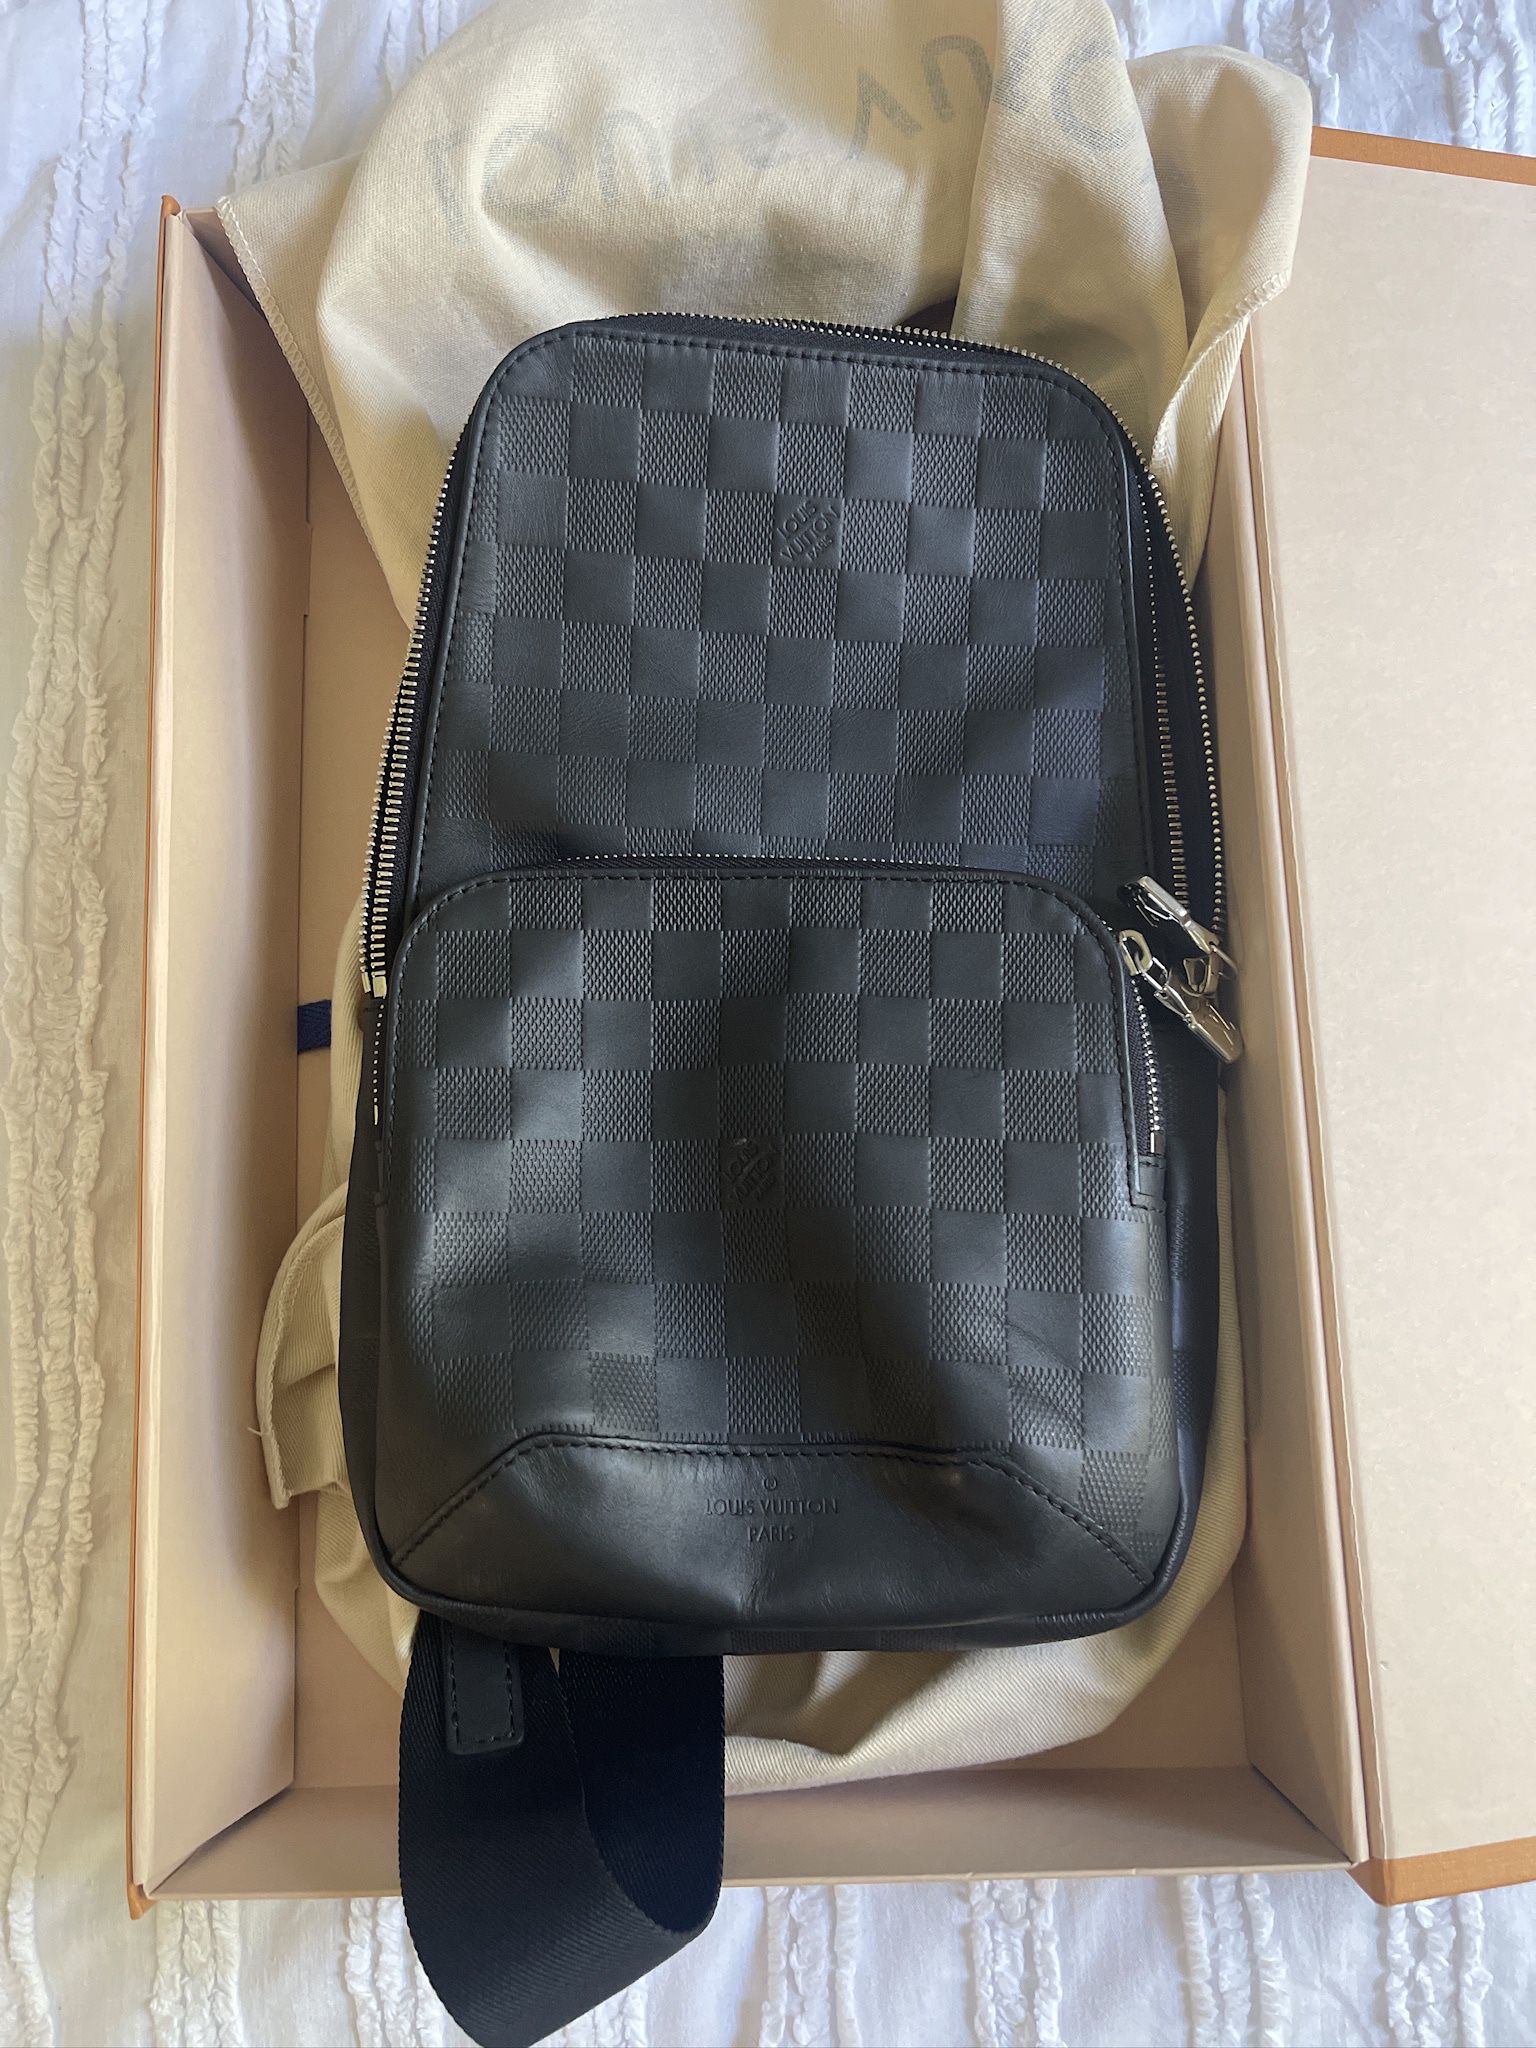 Shop Louis Vuitton Sling Bag For Sale online